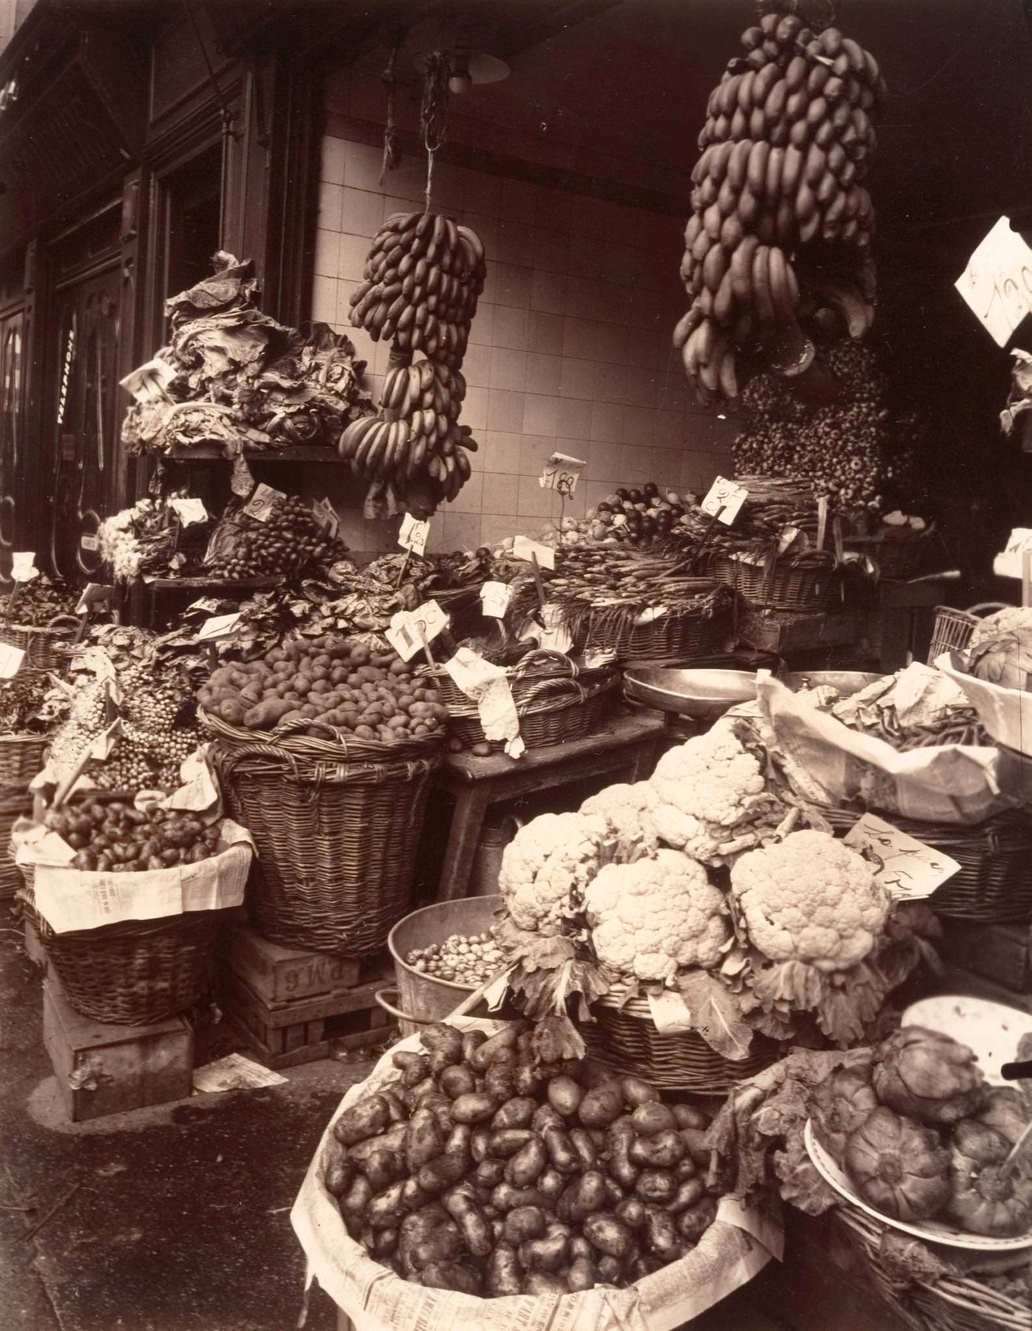 outique de fruits et legumes, Rue Mouffetard, 1925